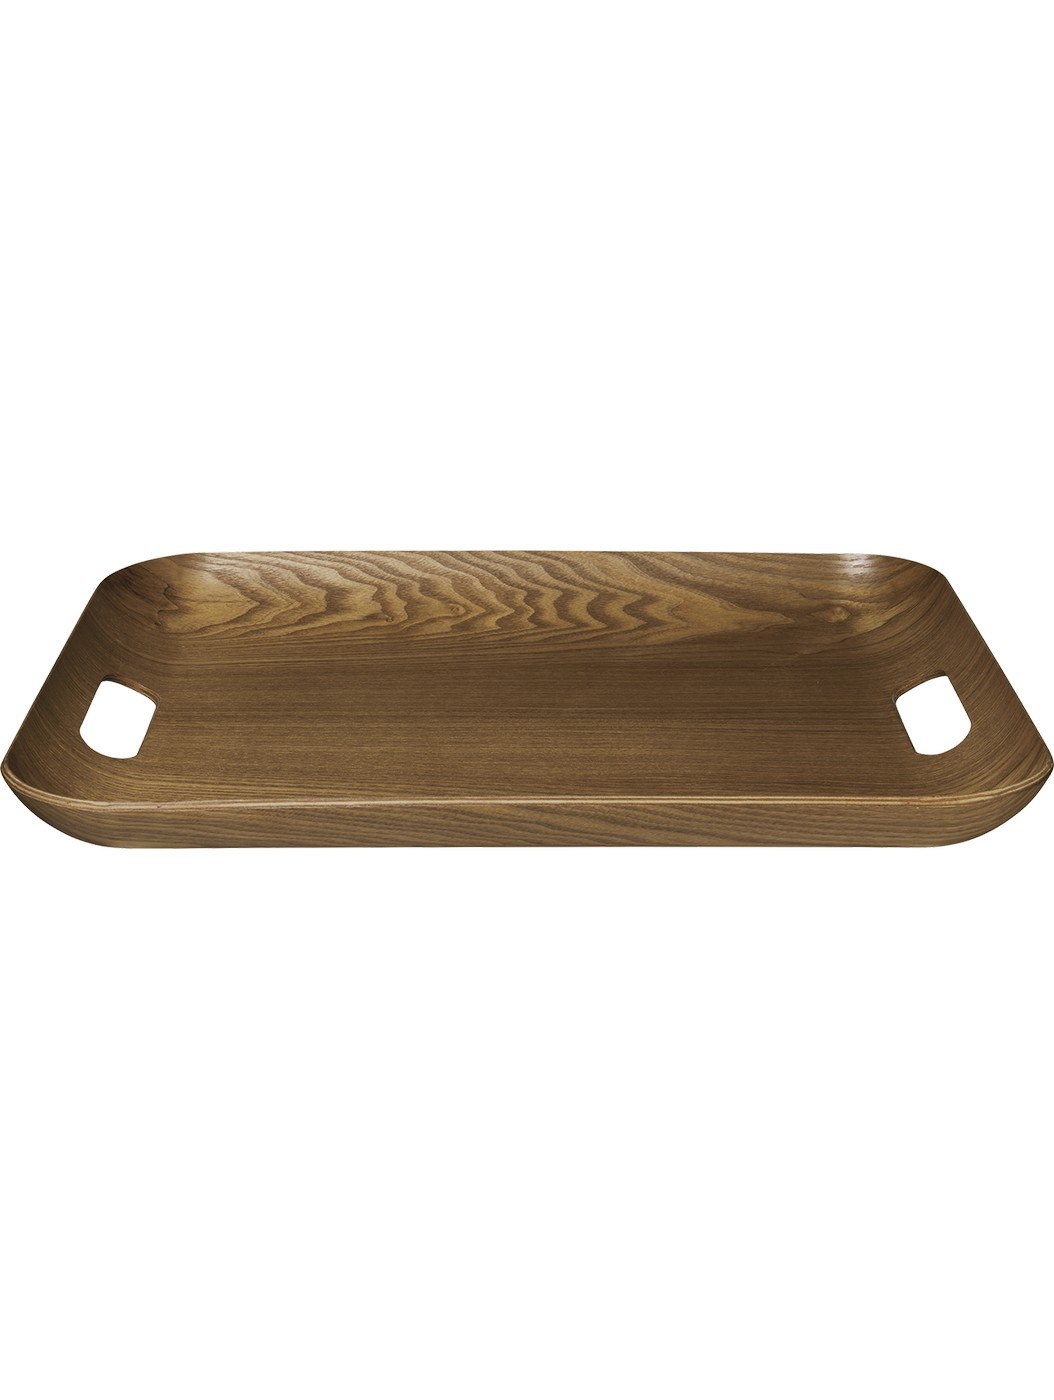 Dřevěný servírovací tác 45x36 cm WOOD ASA Selection - hnědý